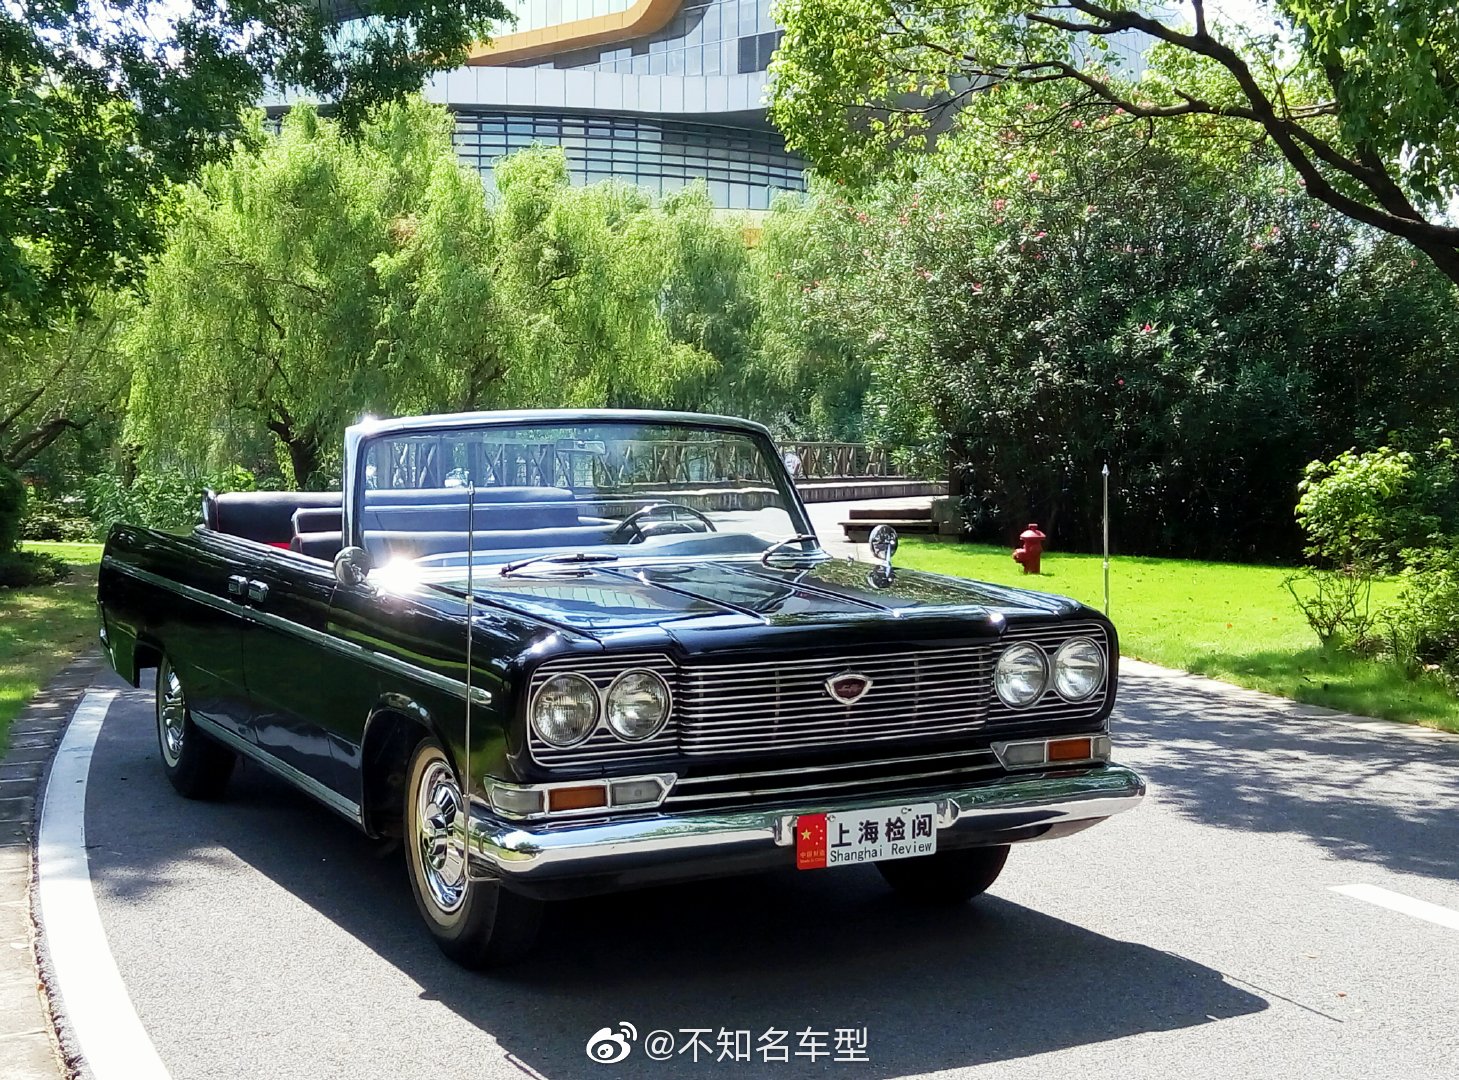 上海牌轿车曾是上世纪60至80年代初中国最主要的公务用车 期间